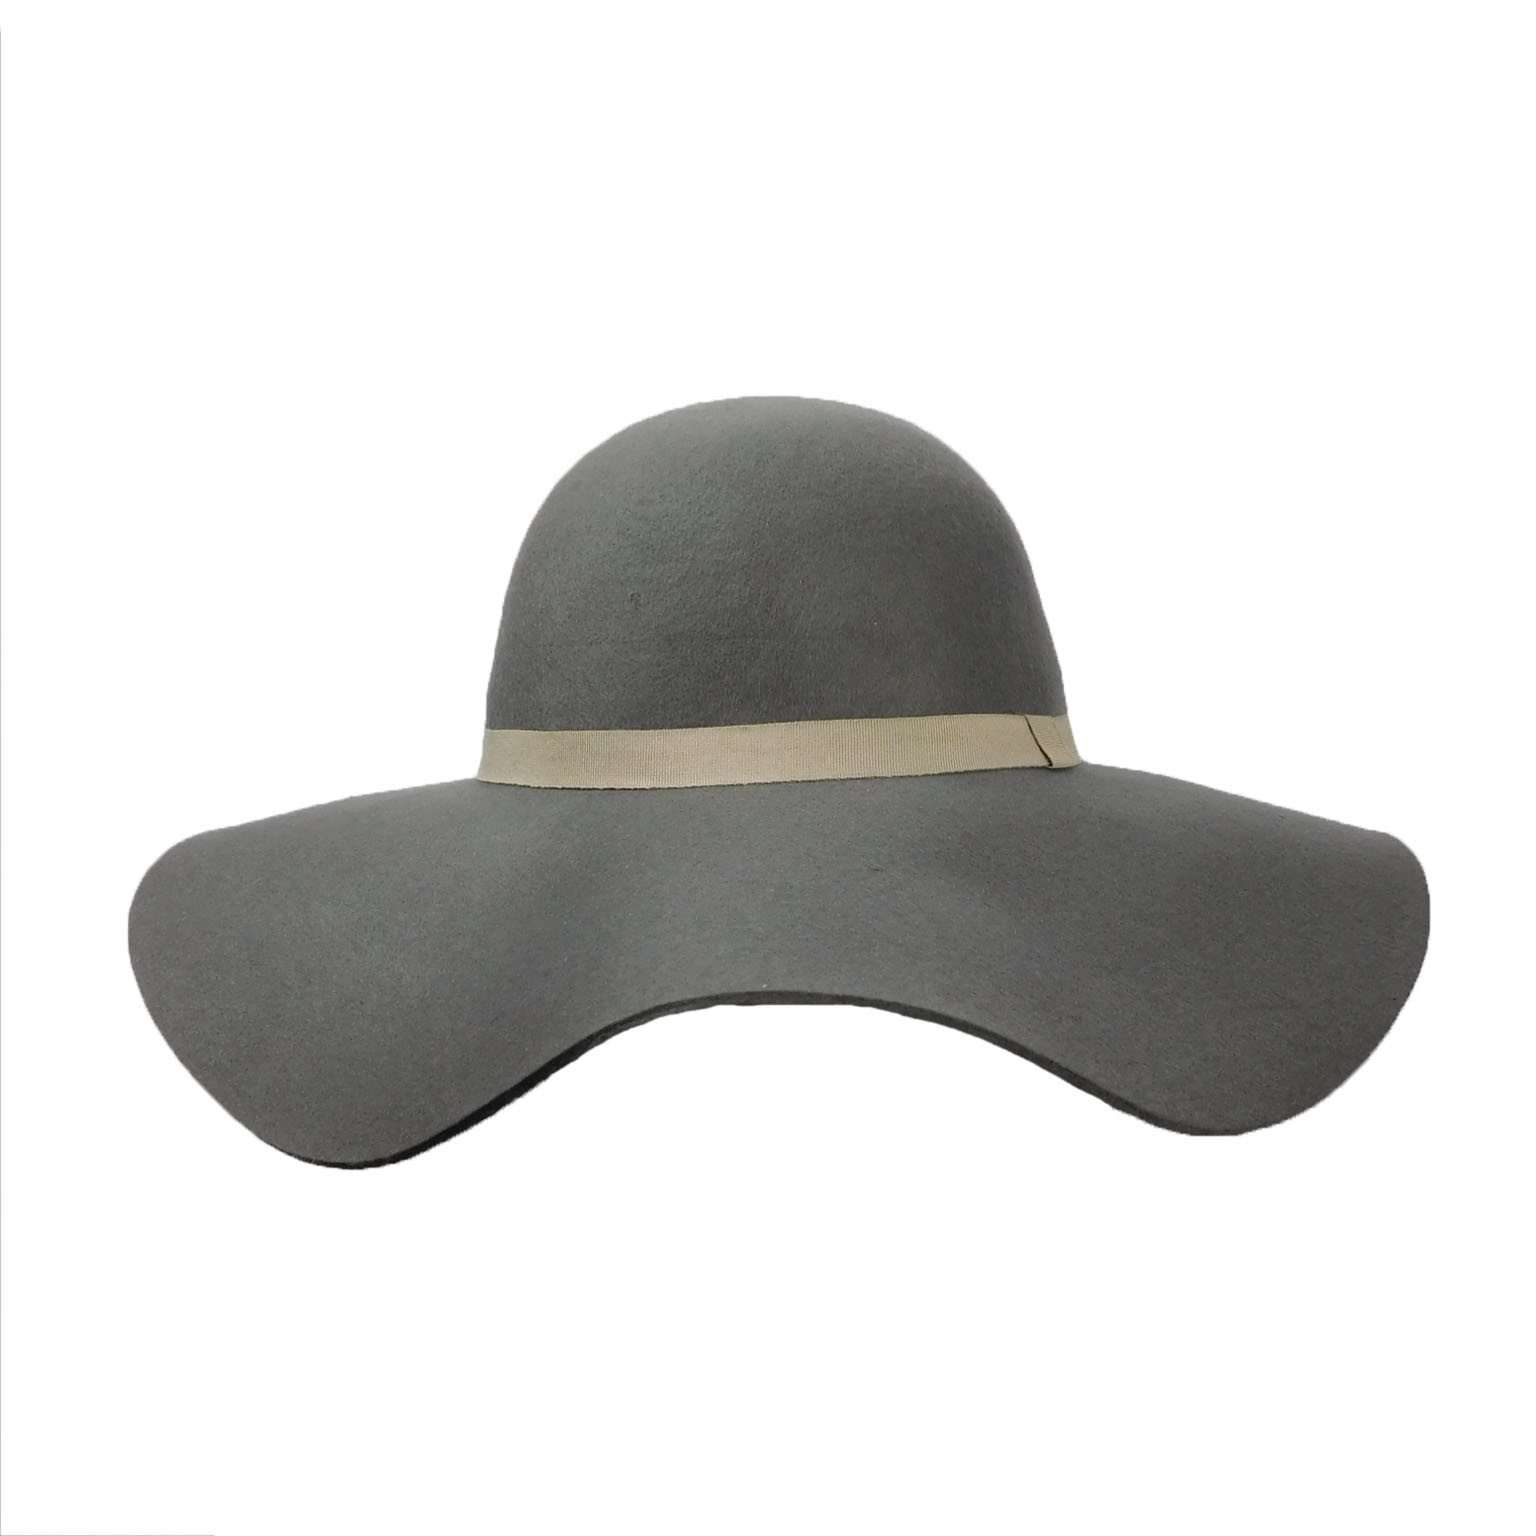 Wool Felt Wide Brim Hat for Women Wide Brim Sun Hat Boardwalk Style Hats    